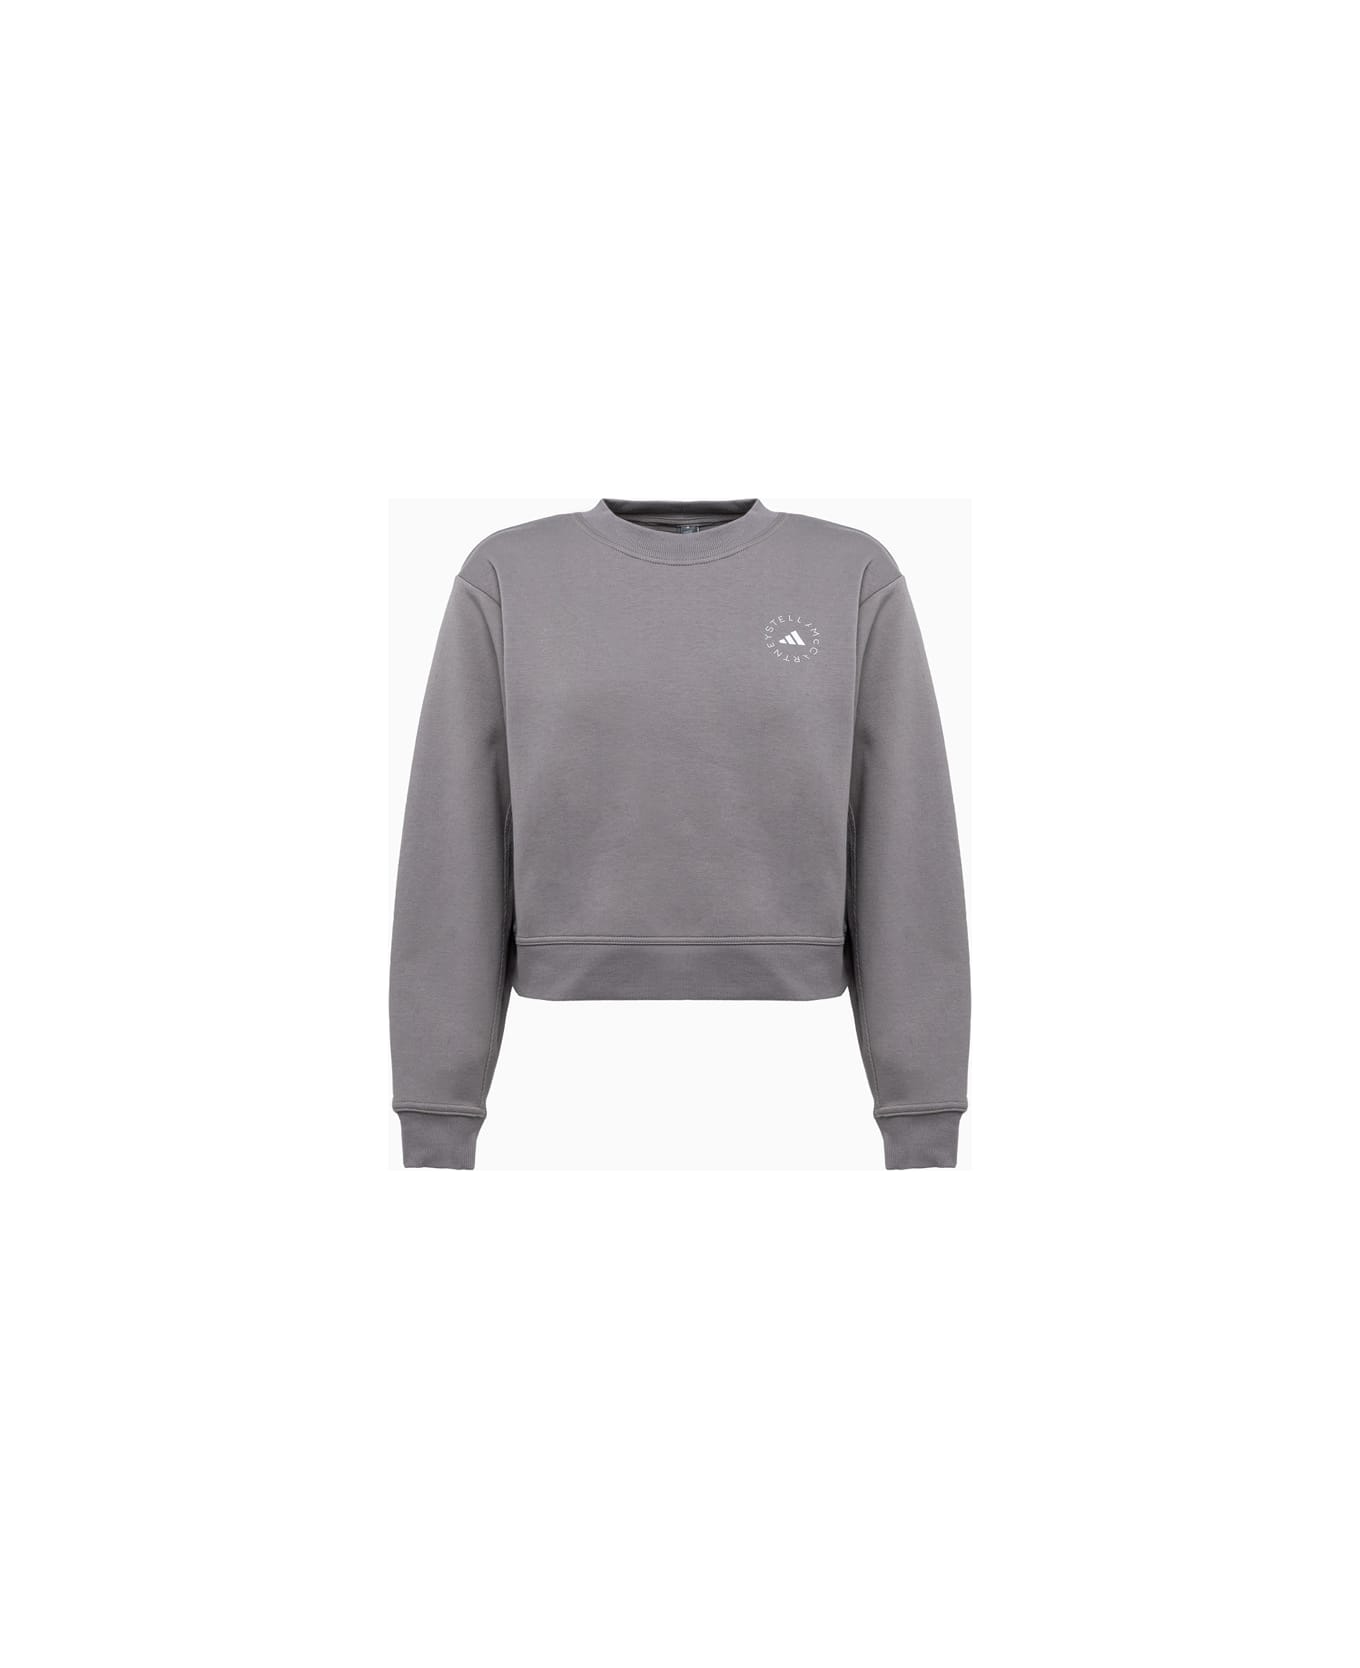 Adidas by Stella McCartney Sweatshirt - Grey